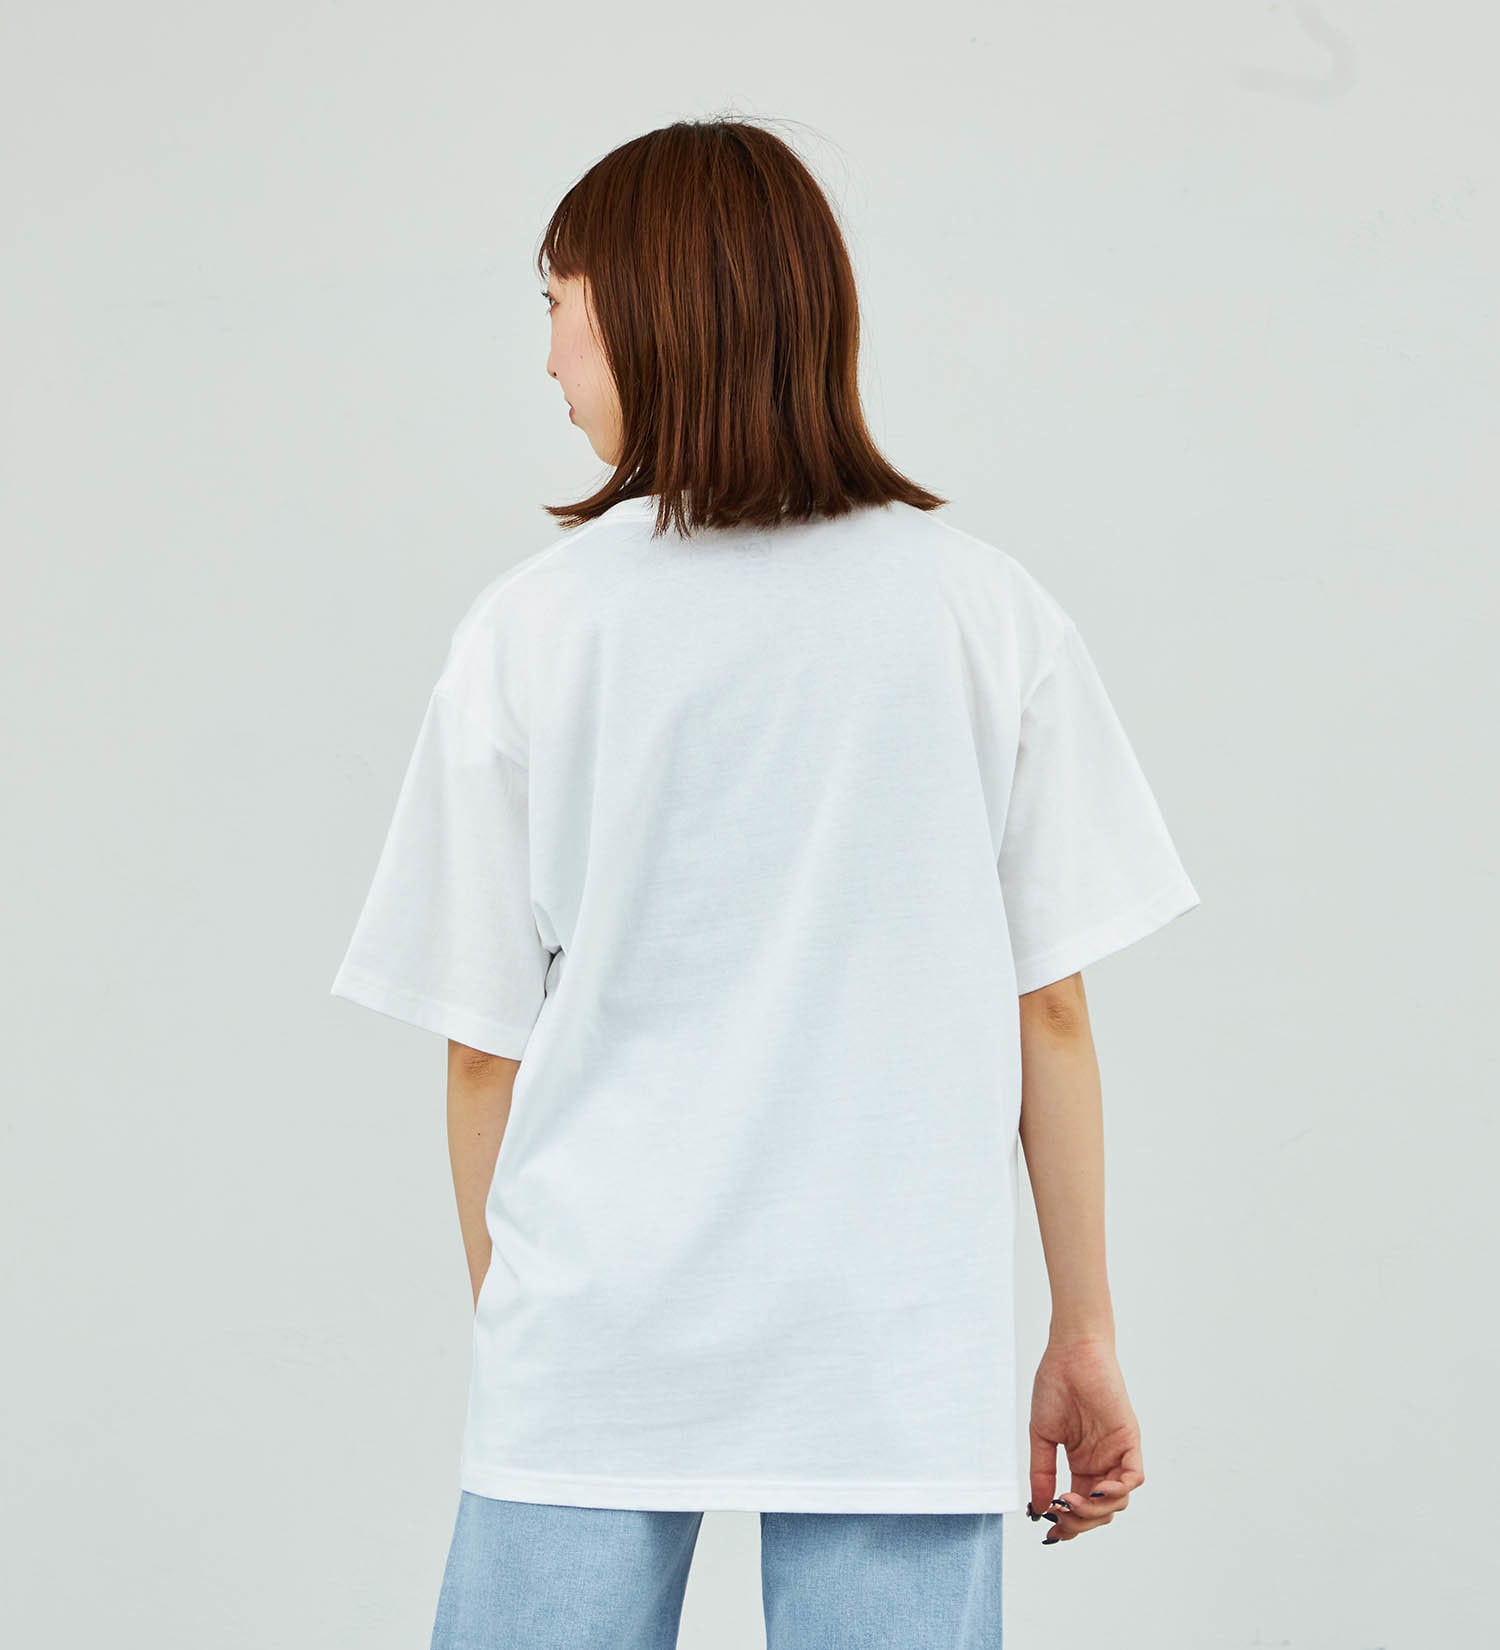 Lee(リー)の【SUMMER SALE】Leeロゴポケット刺繍Tシャツ|トップス/Tシャツ/カットソー/メンズ|ホワイト